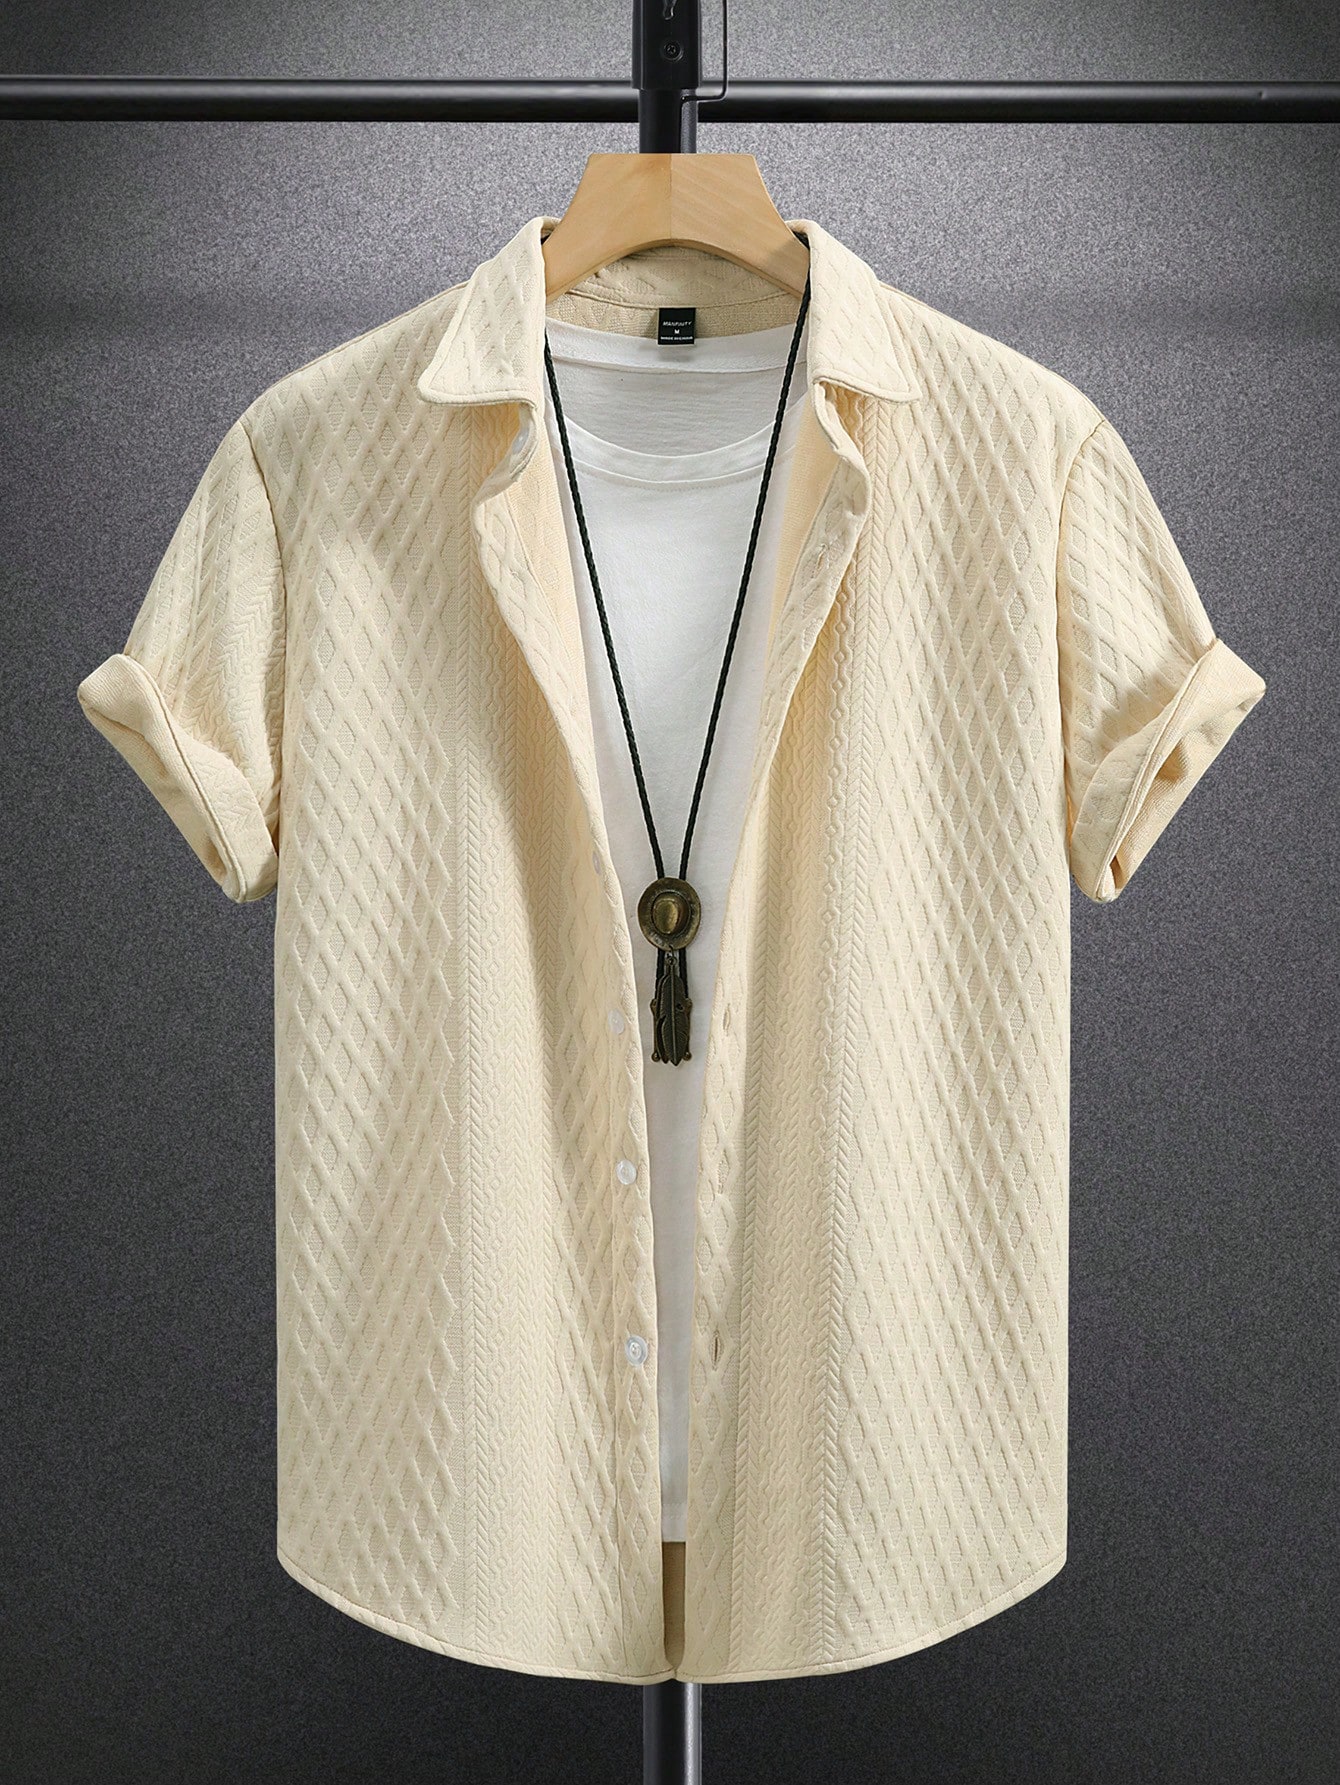 Мужская рубашка с коротким рукавом с тиснением сердца Manfinity Hypemode, хаки текстурированная однотонная мужская футболка поло cb drytec genre cutter